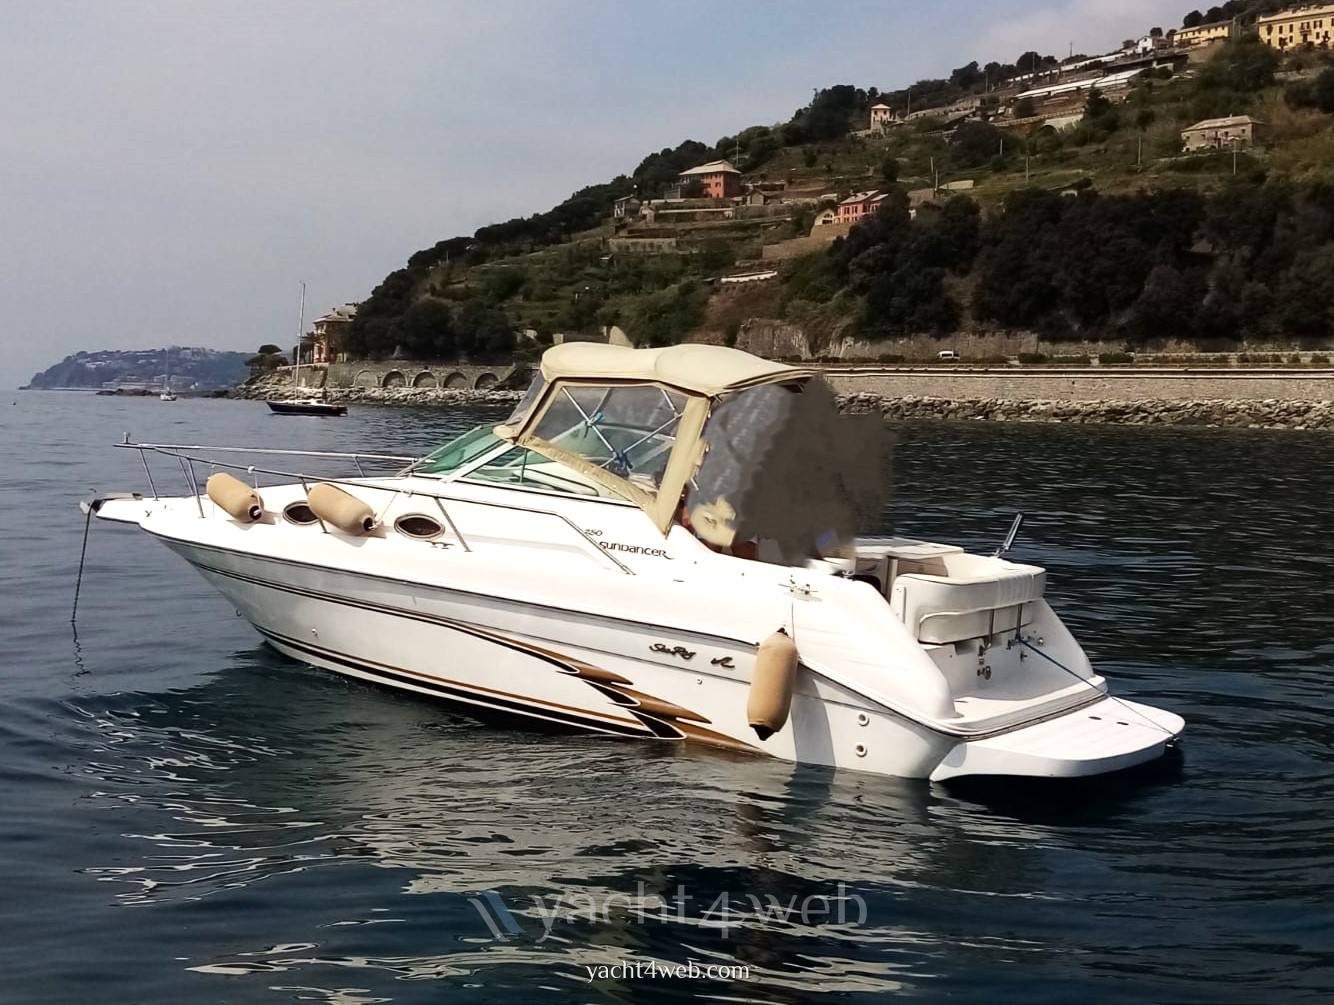 SEA RAY 250 sundancer Motorboot gebraucht zum Verkauf